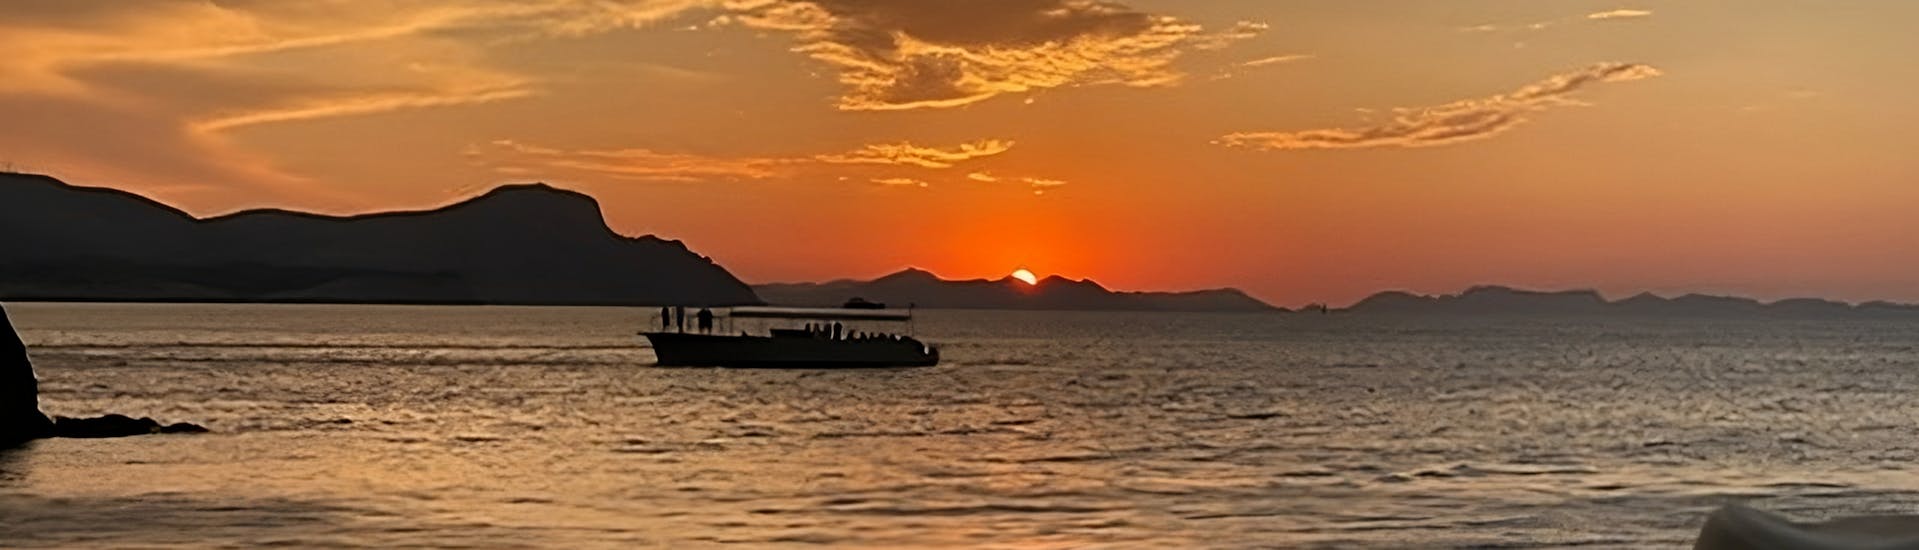 Giro in barca al tramonto da Cala Ratjada con musica jazz e avvistamento dei delfini.